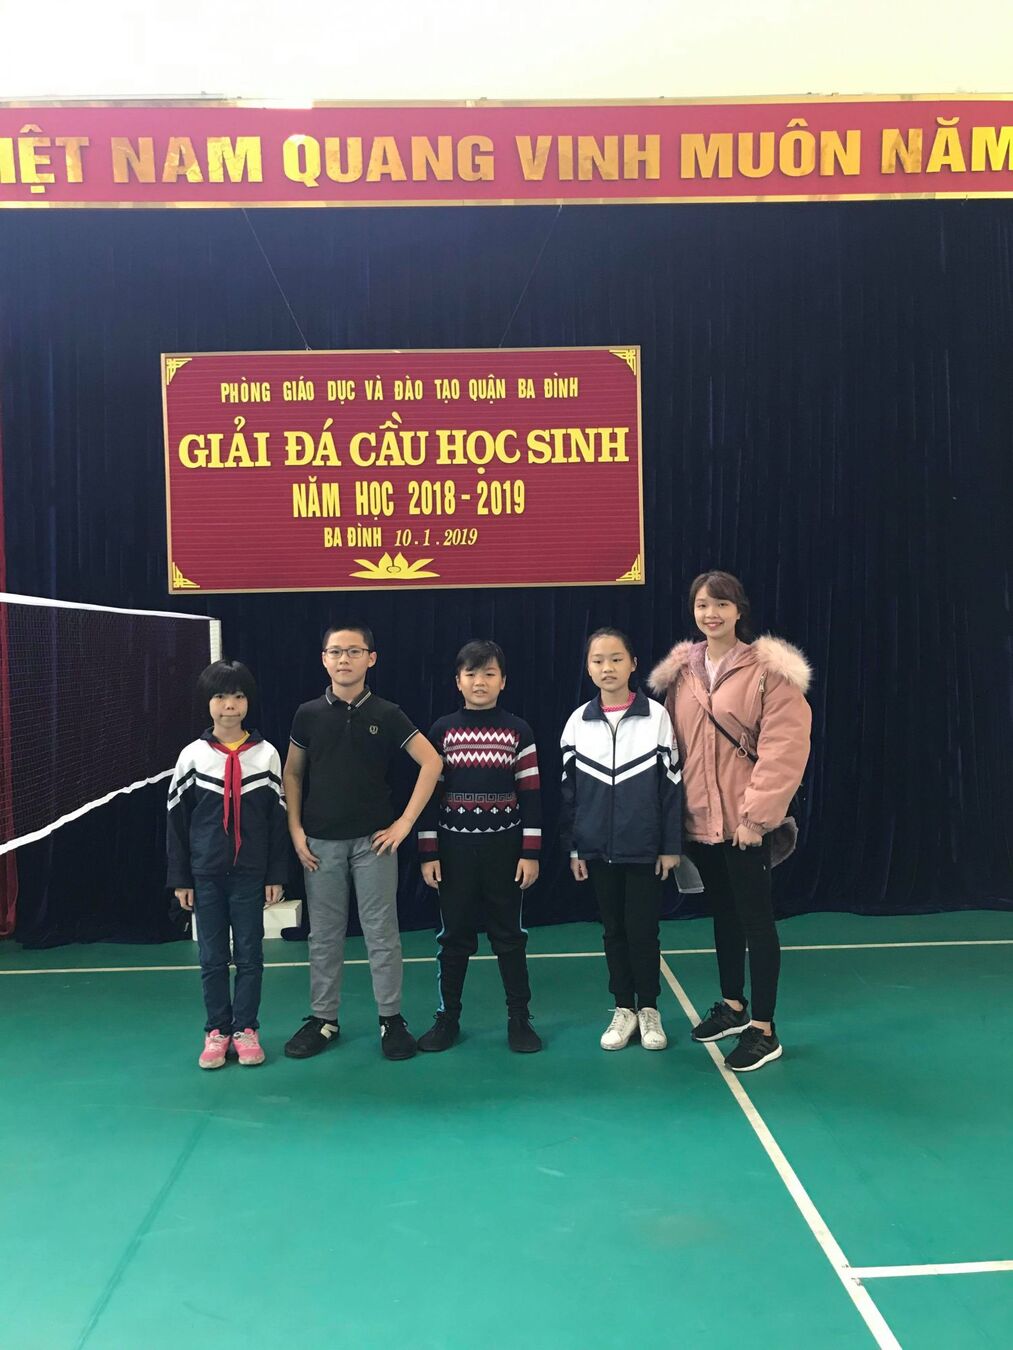 Giải thi đấu đá cầu học sinh quận Ba Đình năm học 2018 - 2019 của trường Tiểu học Nguyễn Bá Ngọc